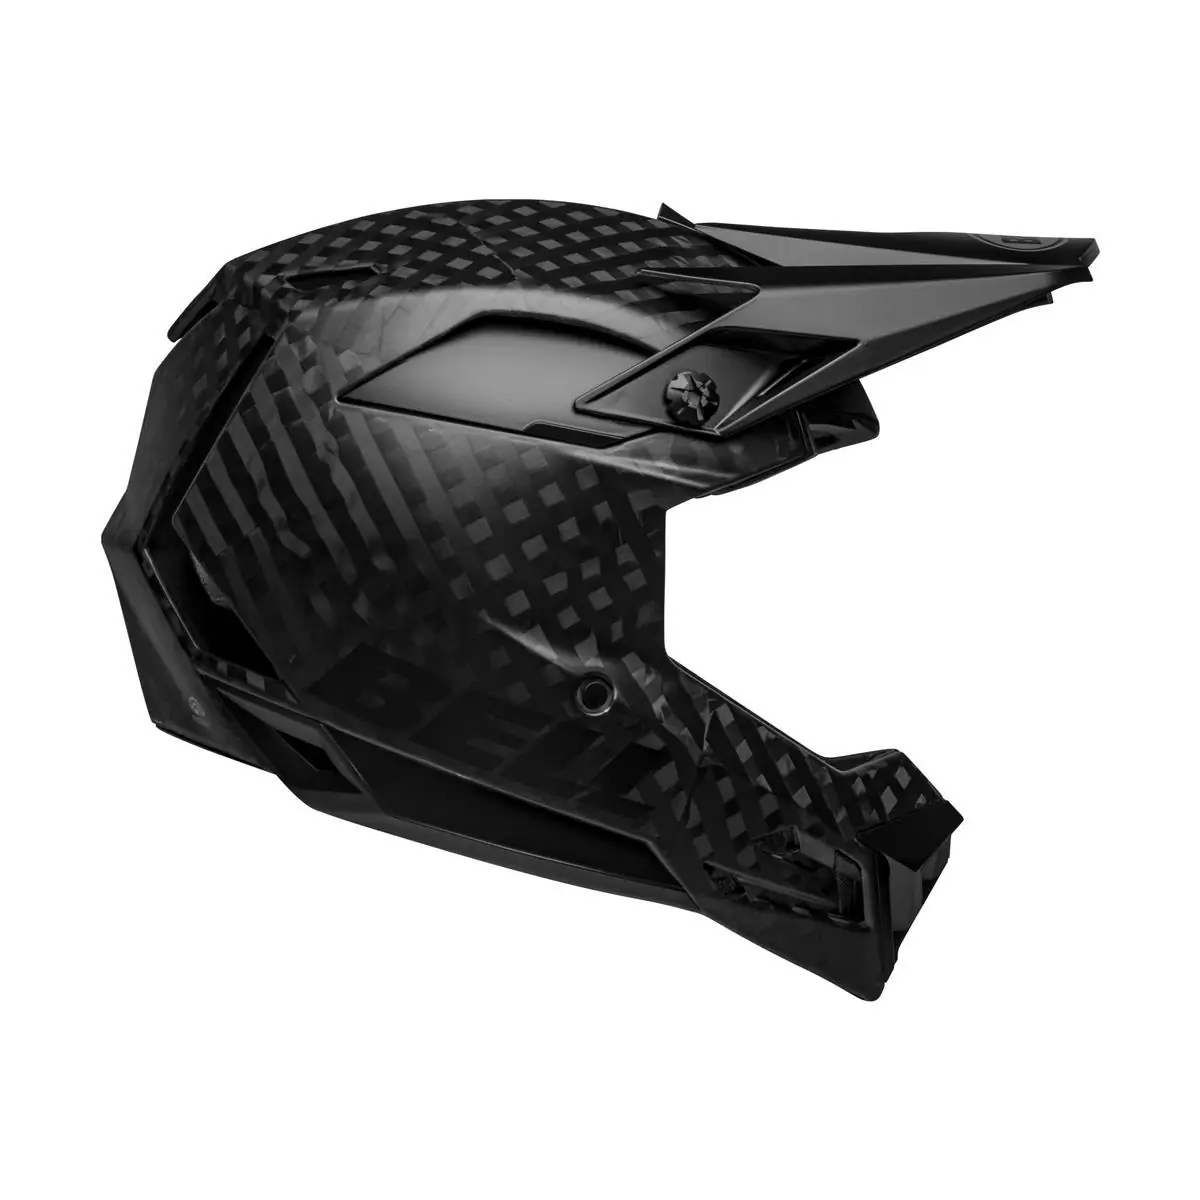 Full-10 Spherical Matte Black Carbon Full Face Helmet Size XS/S (51-55cm) #1